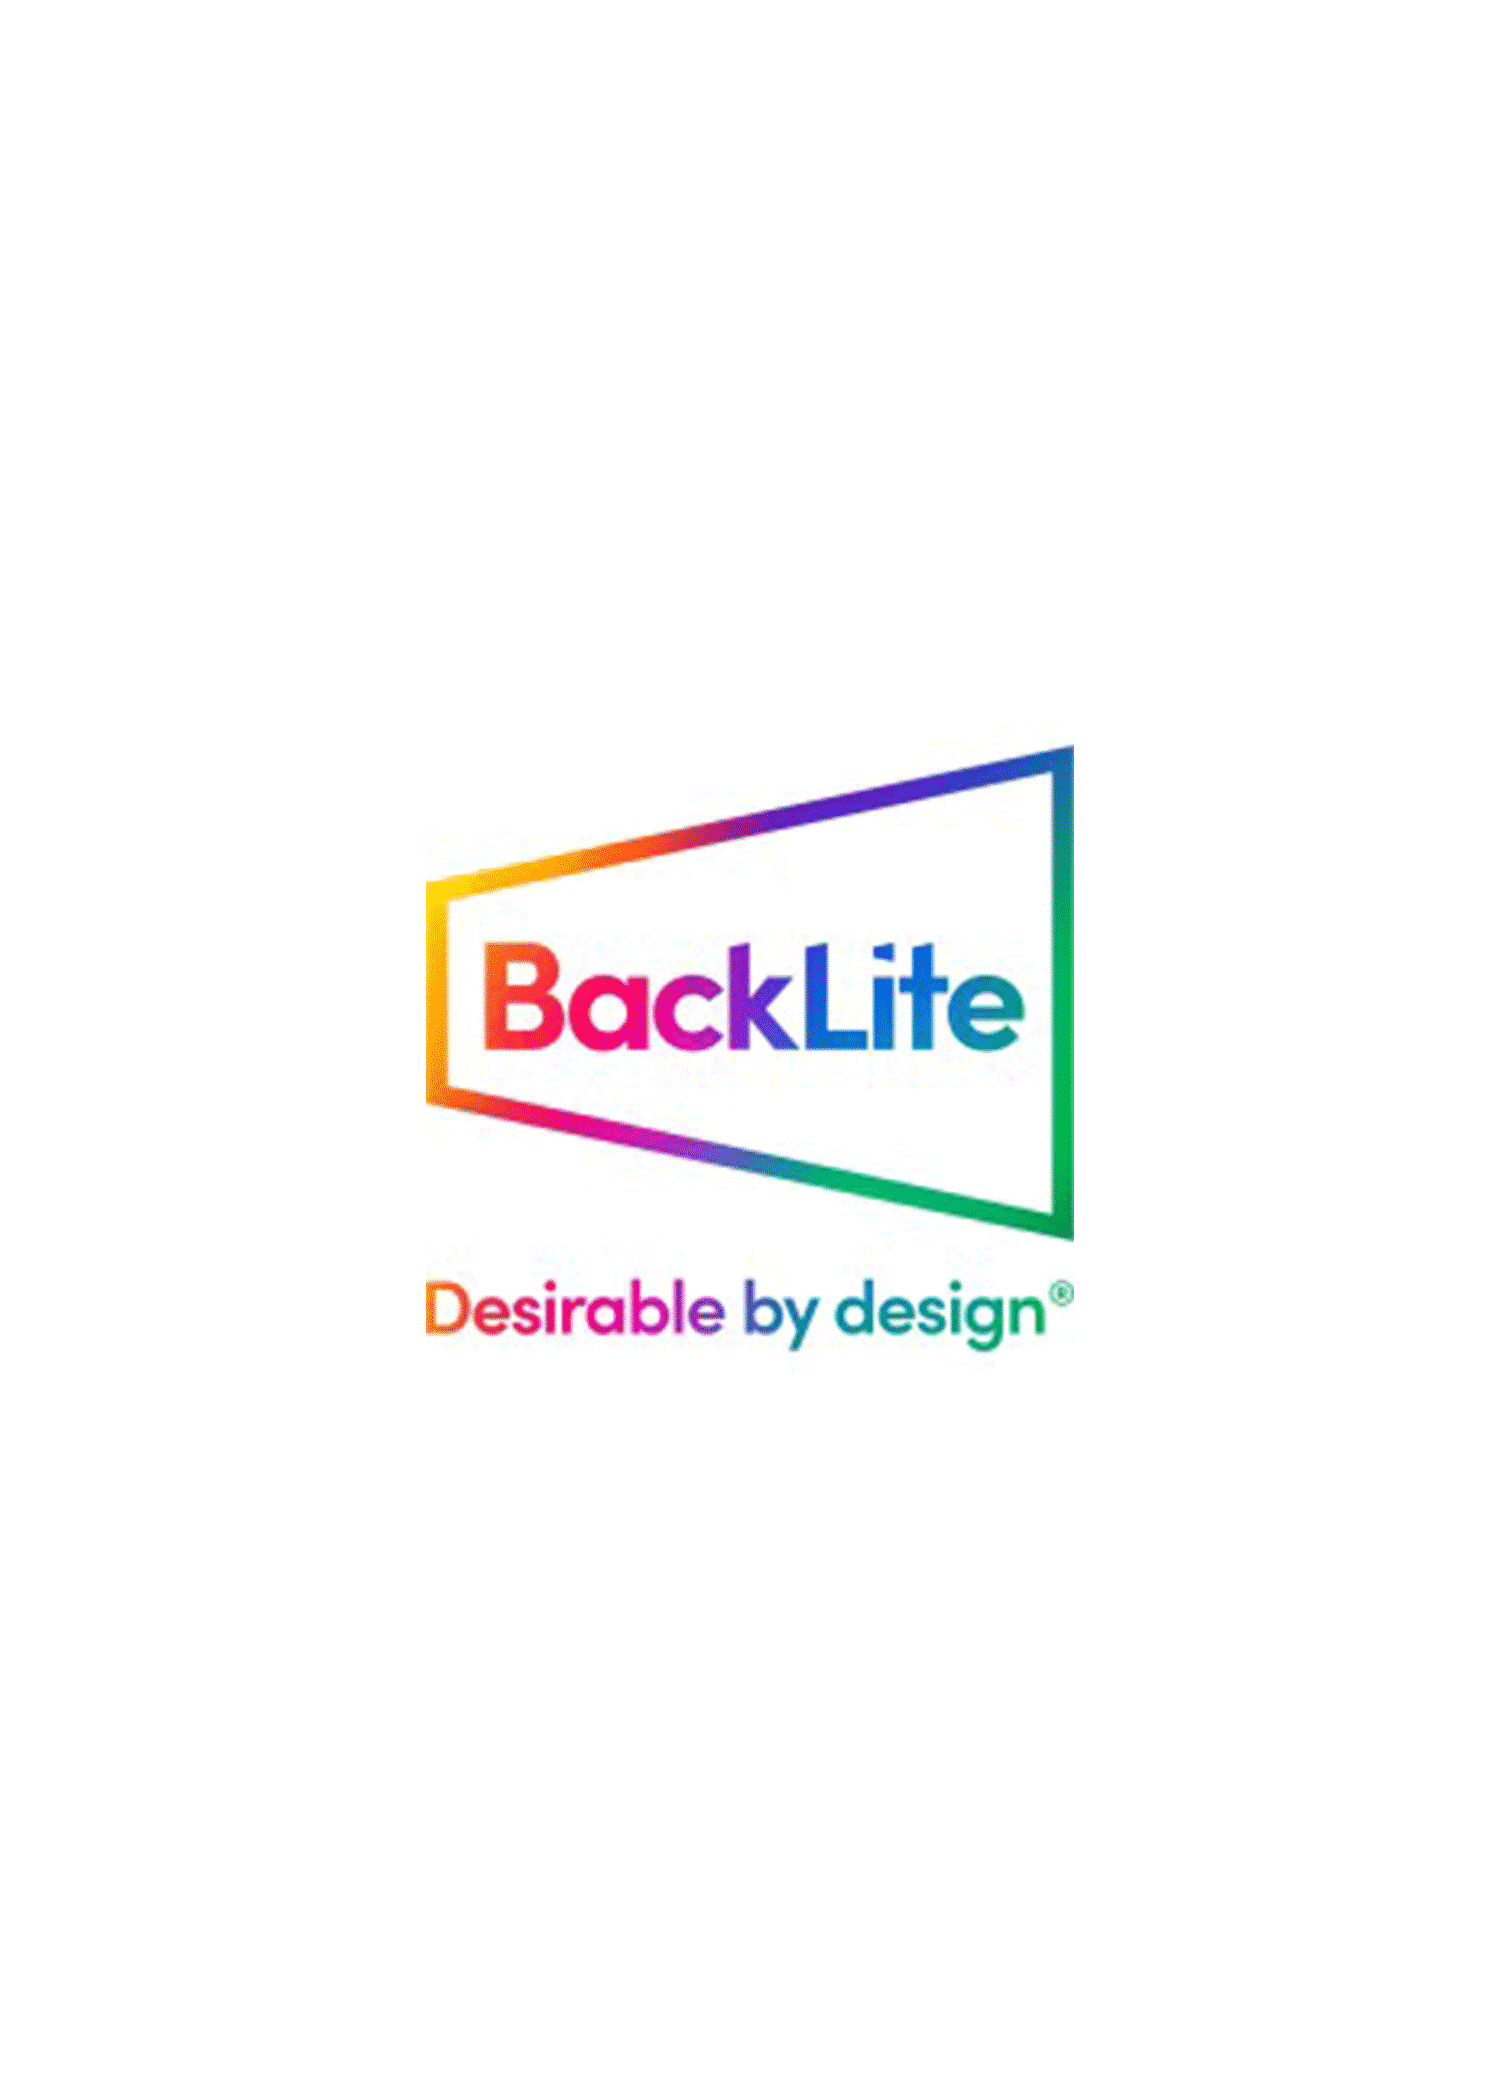 Backlite Media Exploring Out Of Home Design